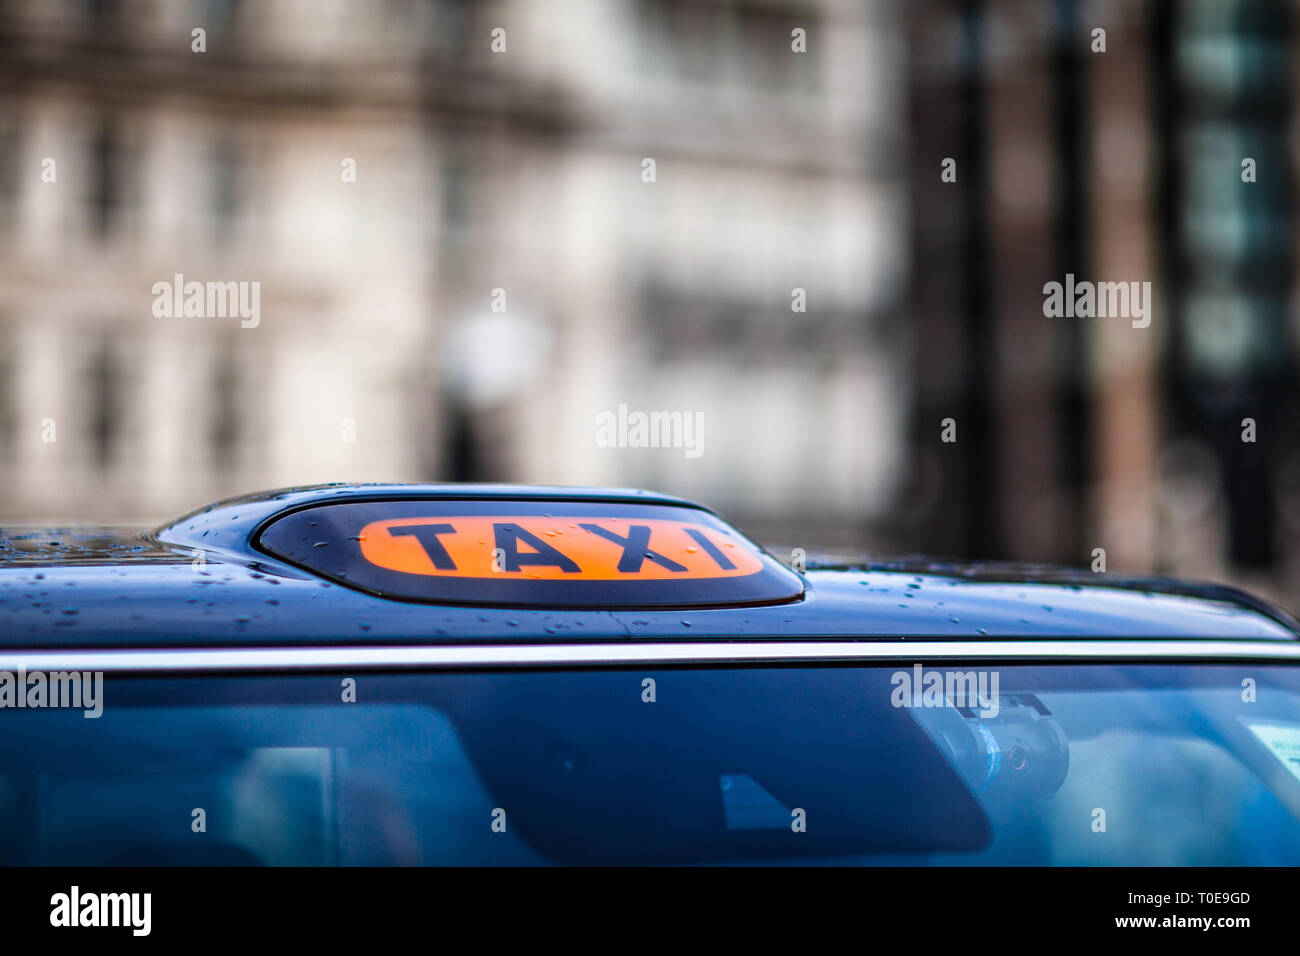 Typische Taxischild Auf Auto Stockfoto und mehr Bilder von Taxi - Taxi,  Vereinigtes Königreich, Ganz oben - iStock